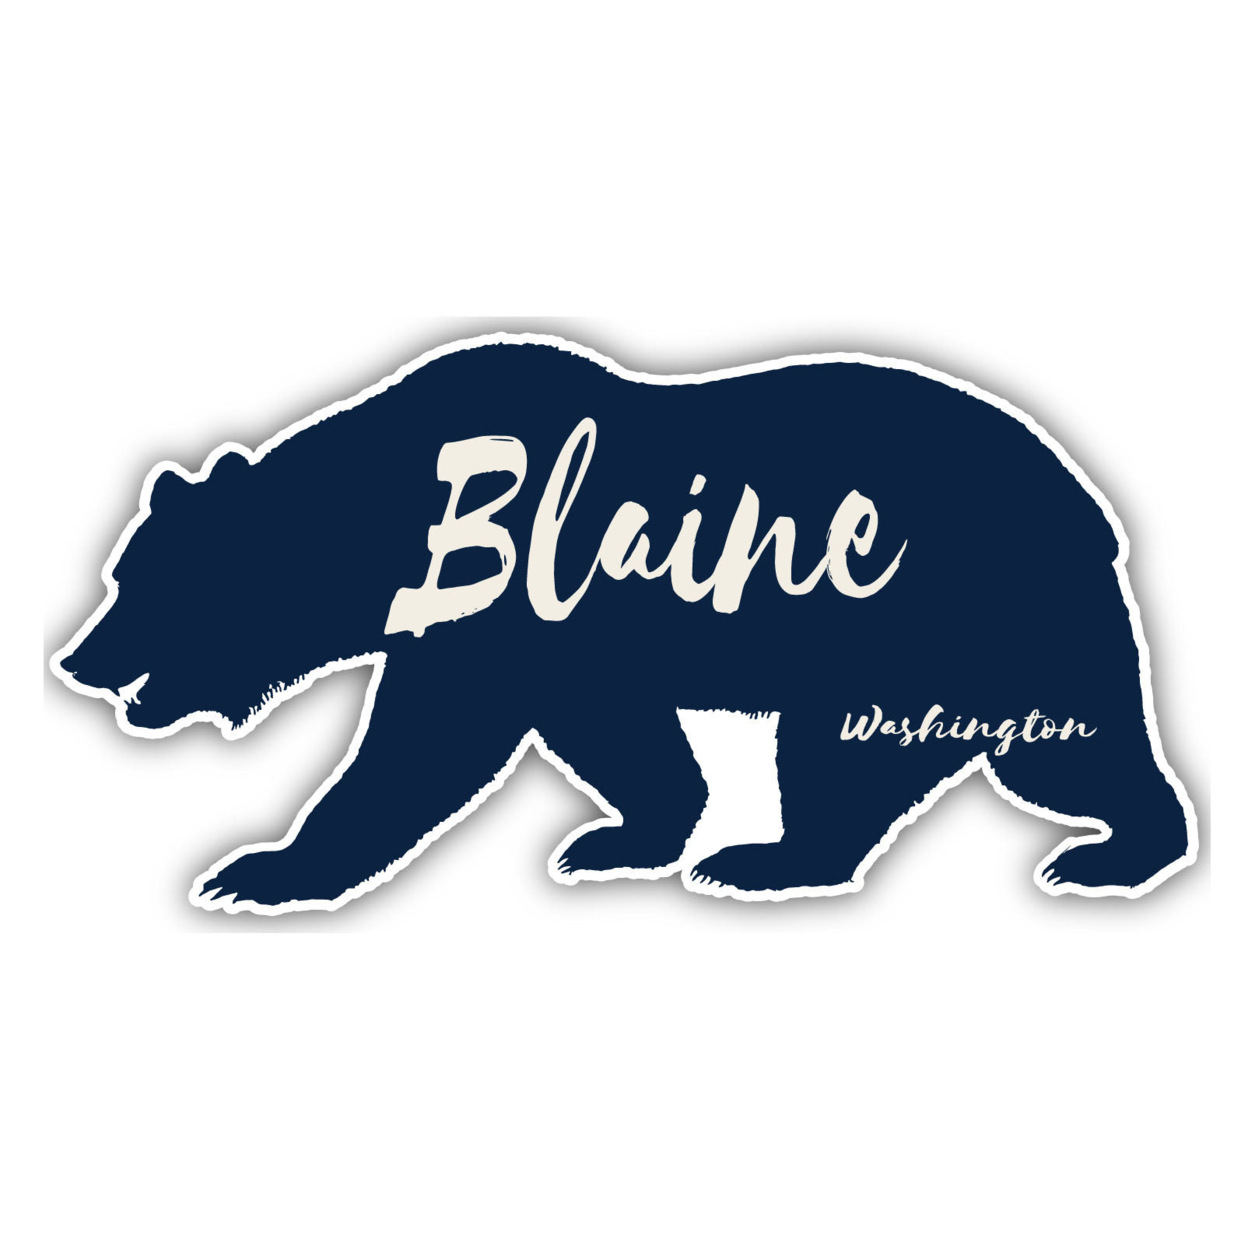 Blaine Washington Souvenir Decorative Stickers (Choose Theme And Size) - 4-Pack, 2-Inch, Tent